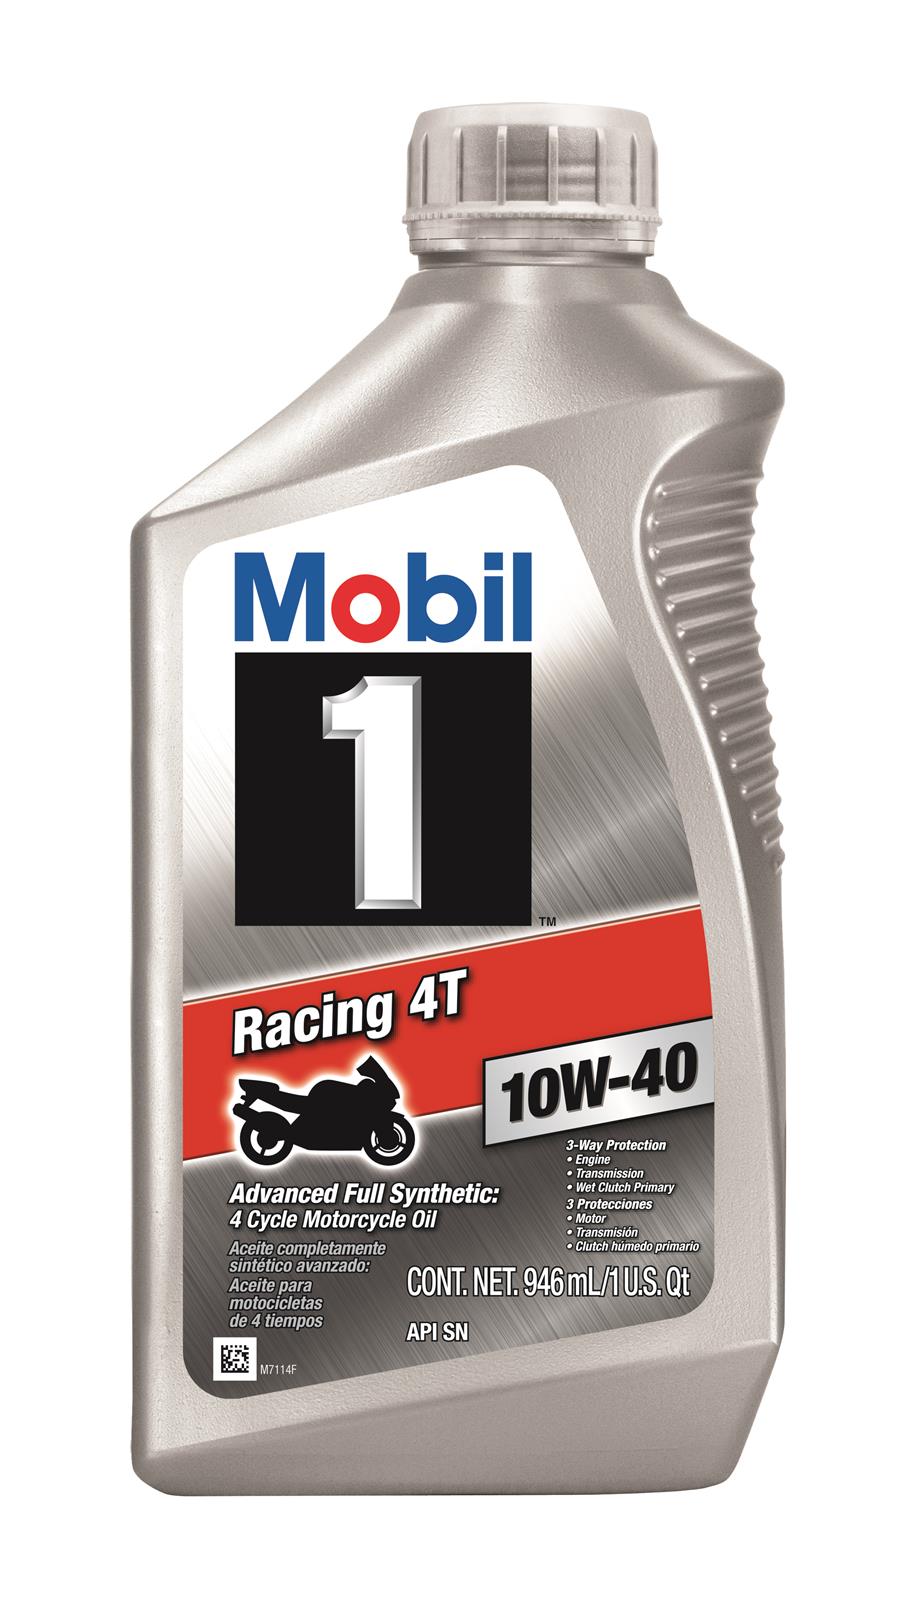 Mobil 1 124245 Mobil 1 Racing 4T Motor Oil Summit Racing